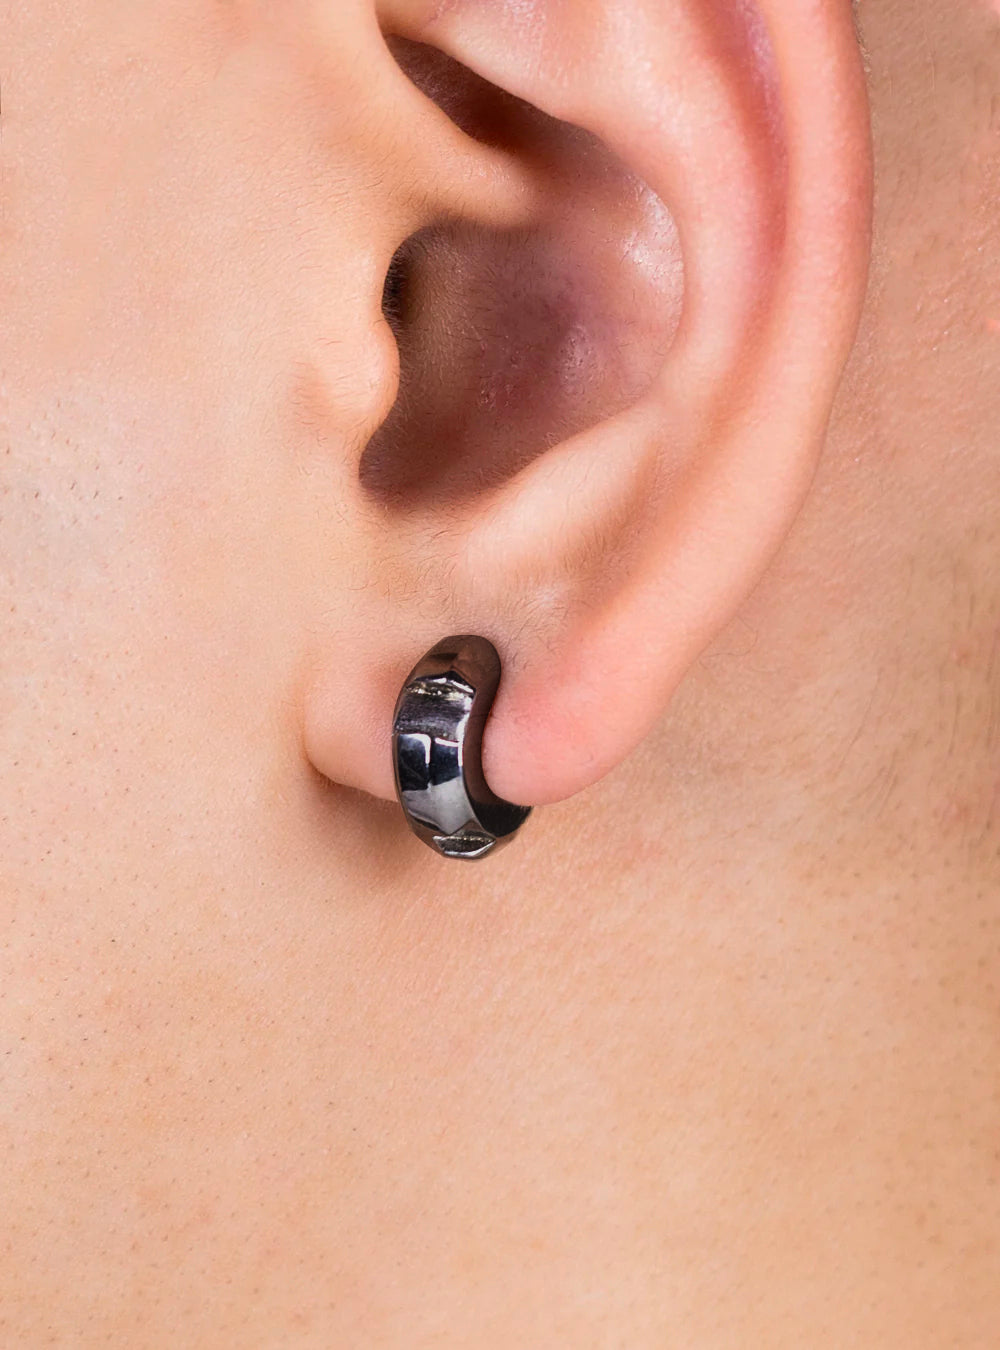 Chuck-nut huggie earrings